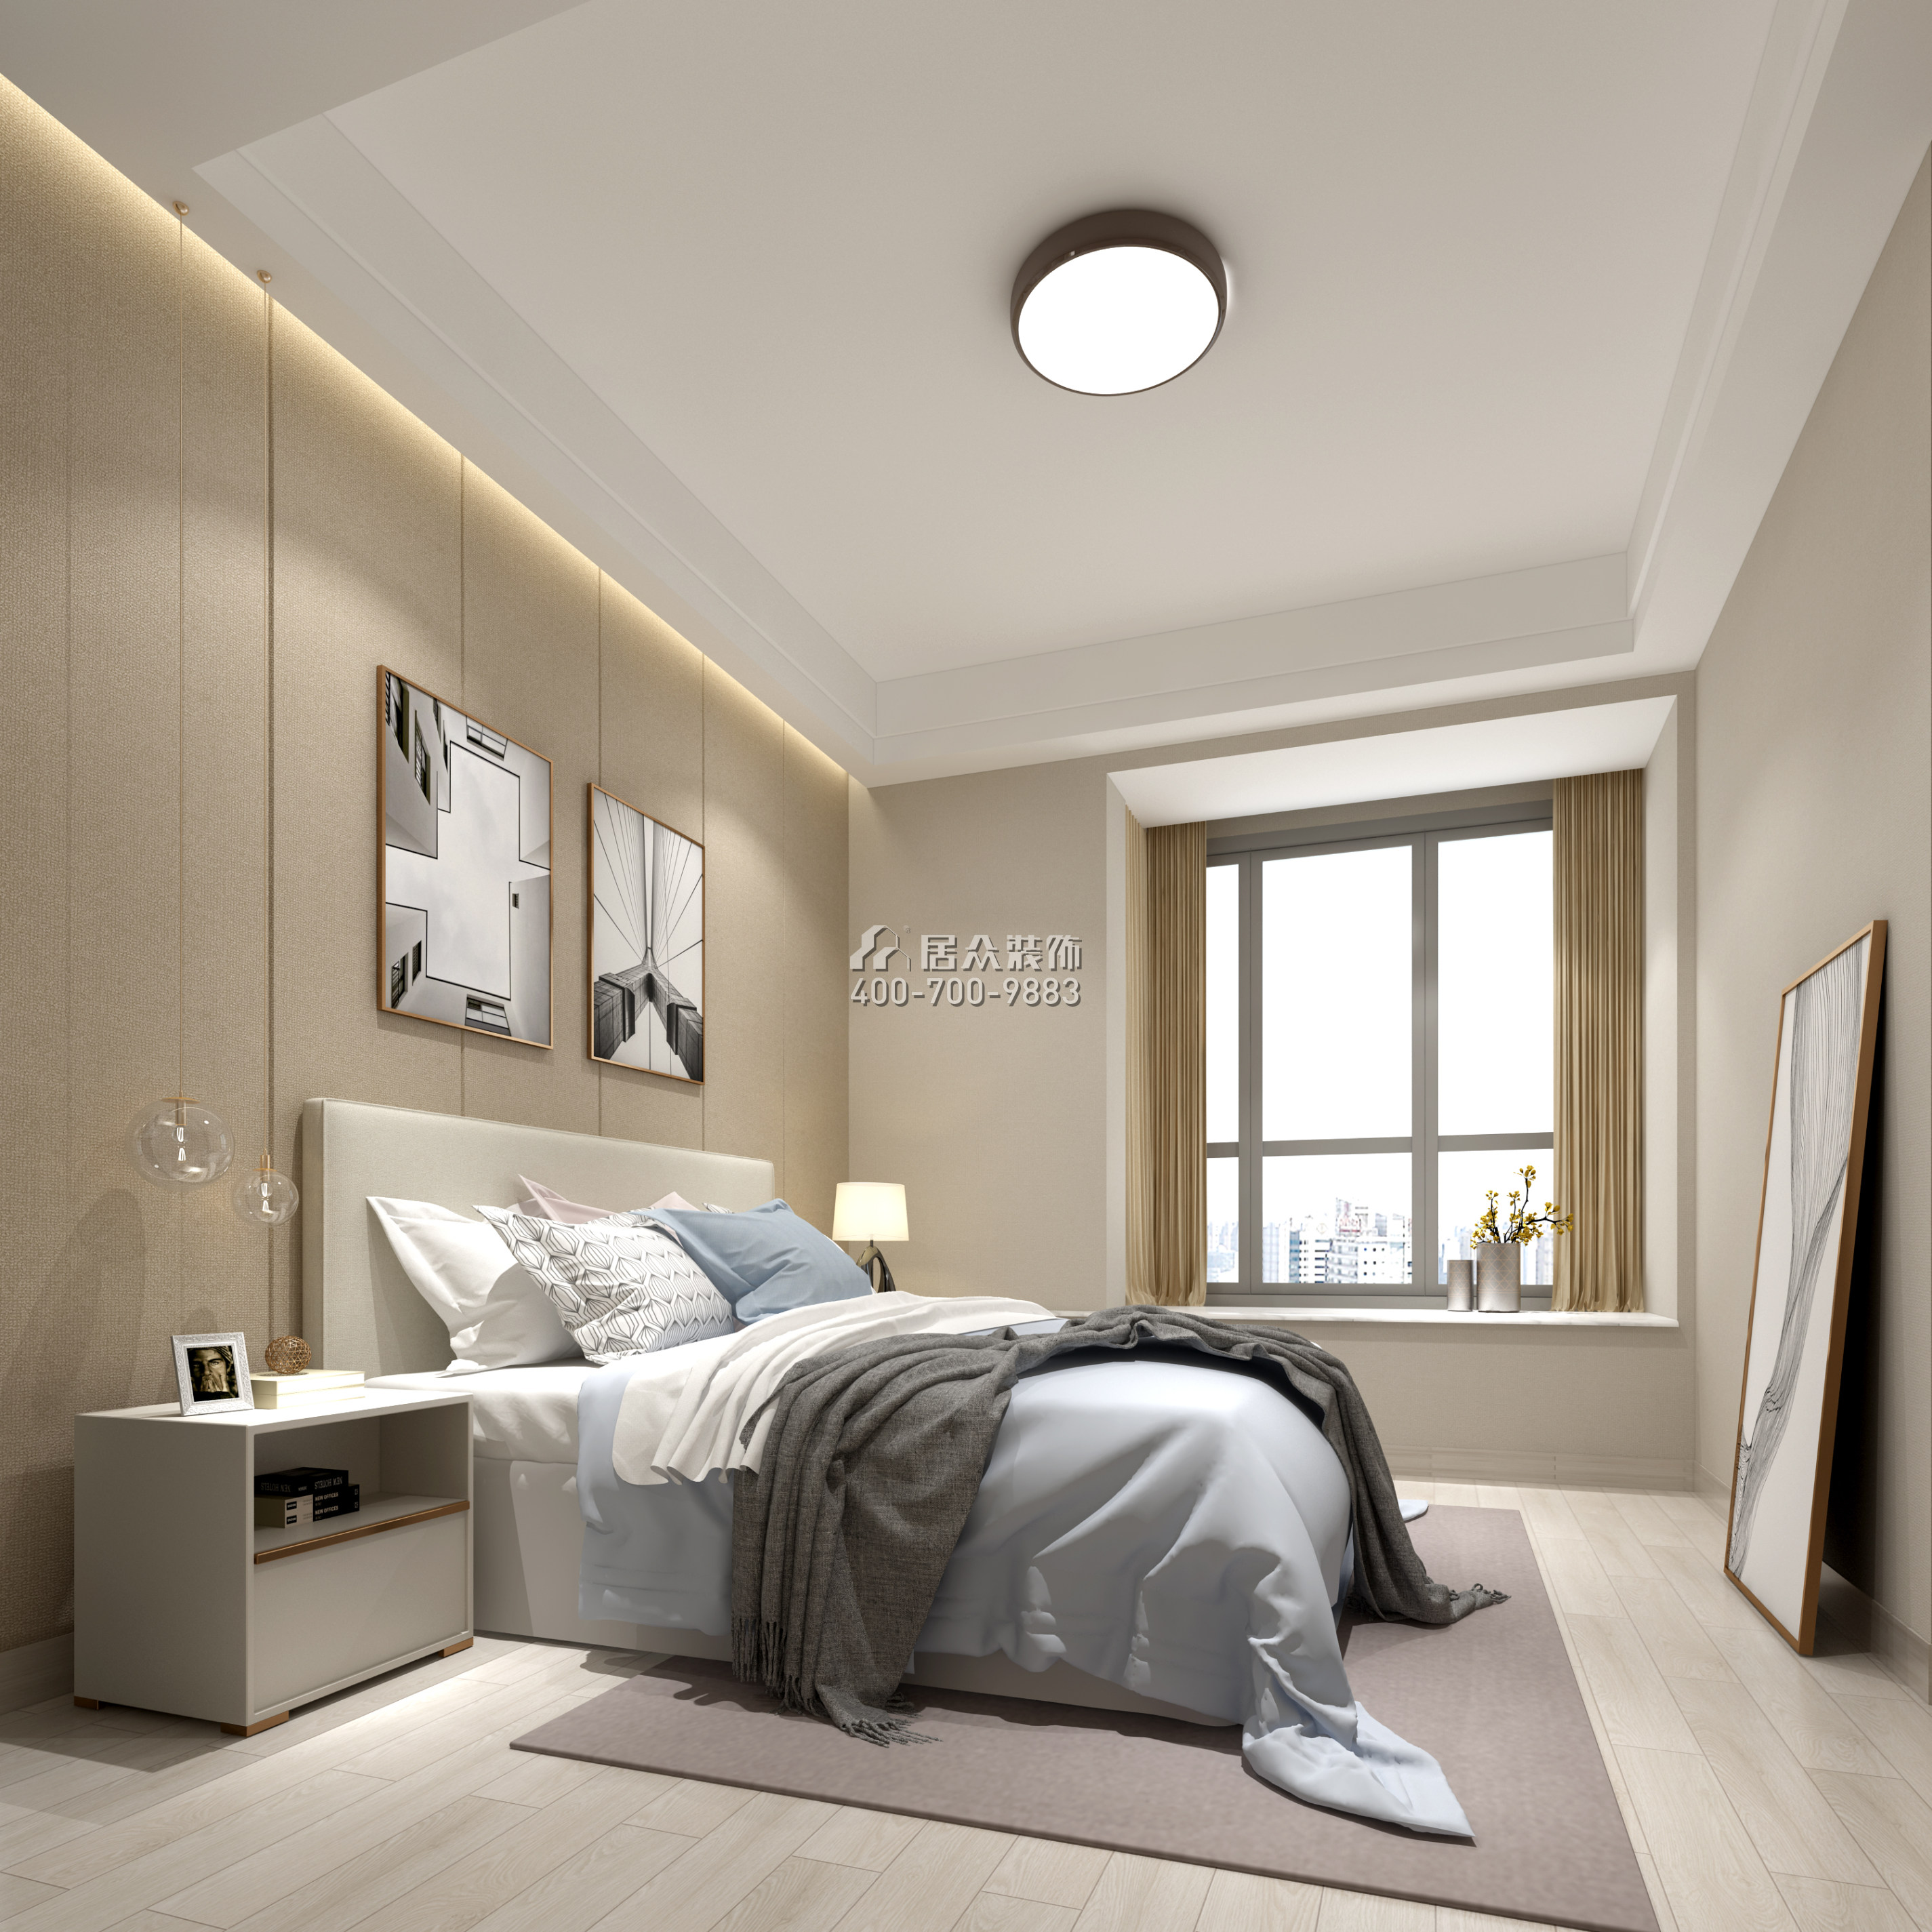 黄埔雅苑三期72平方米现代简约风格平层户型卧室装修效果图